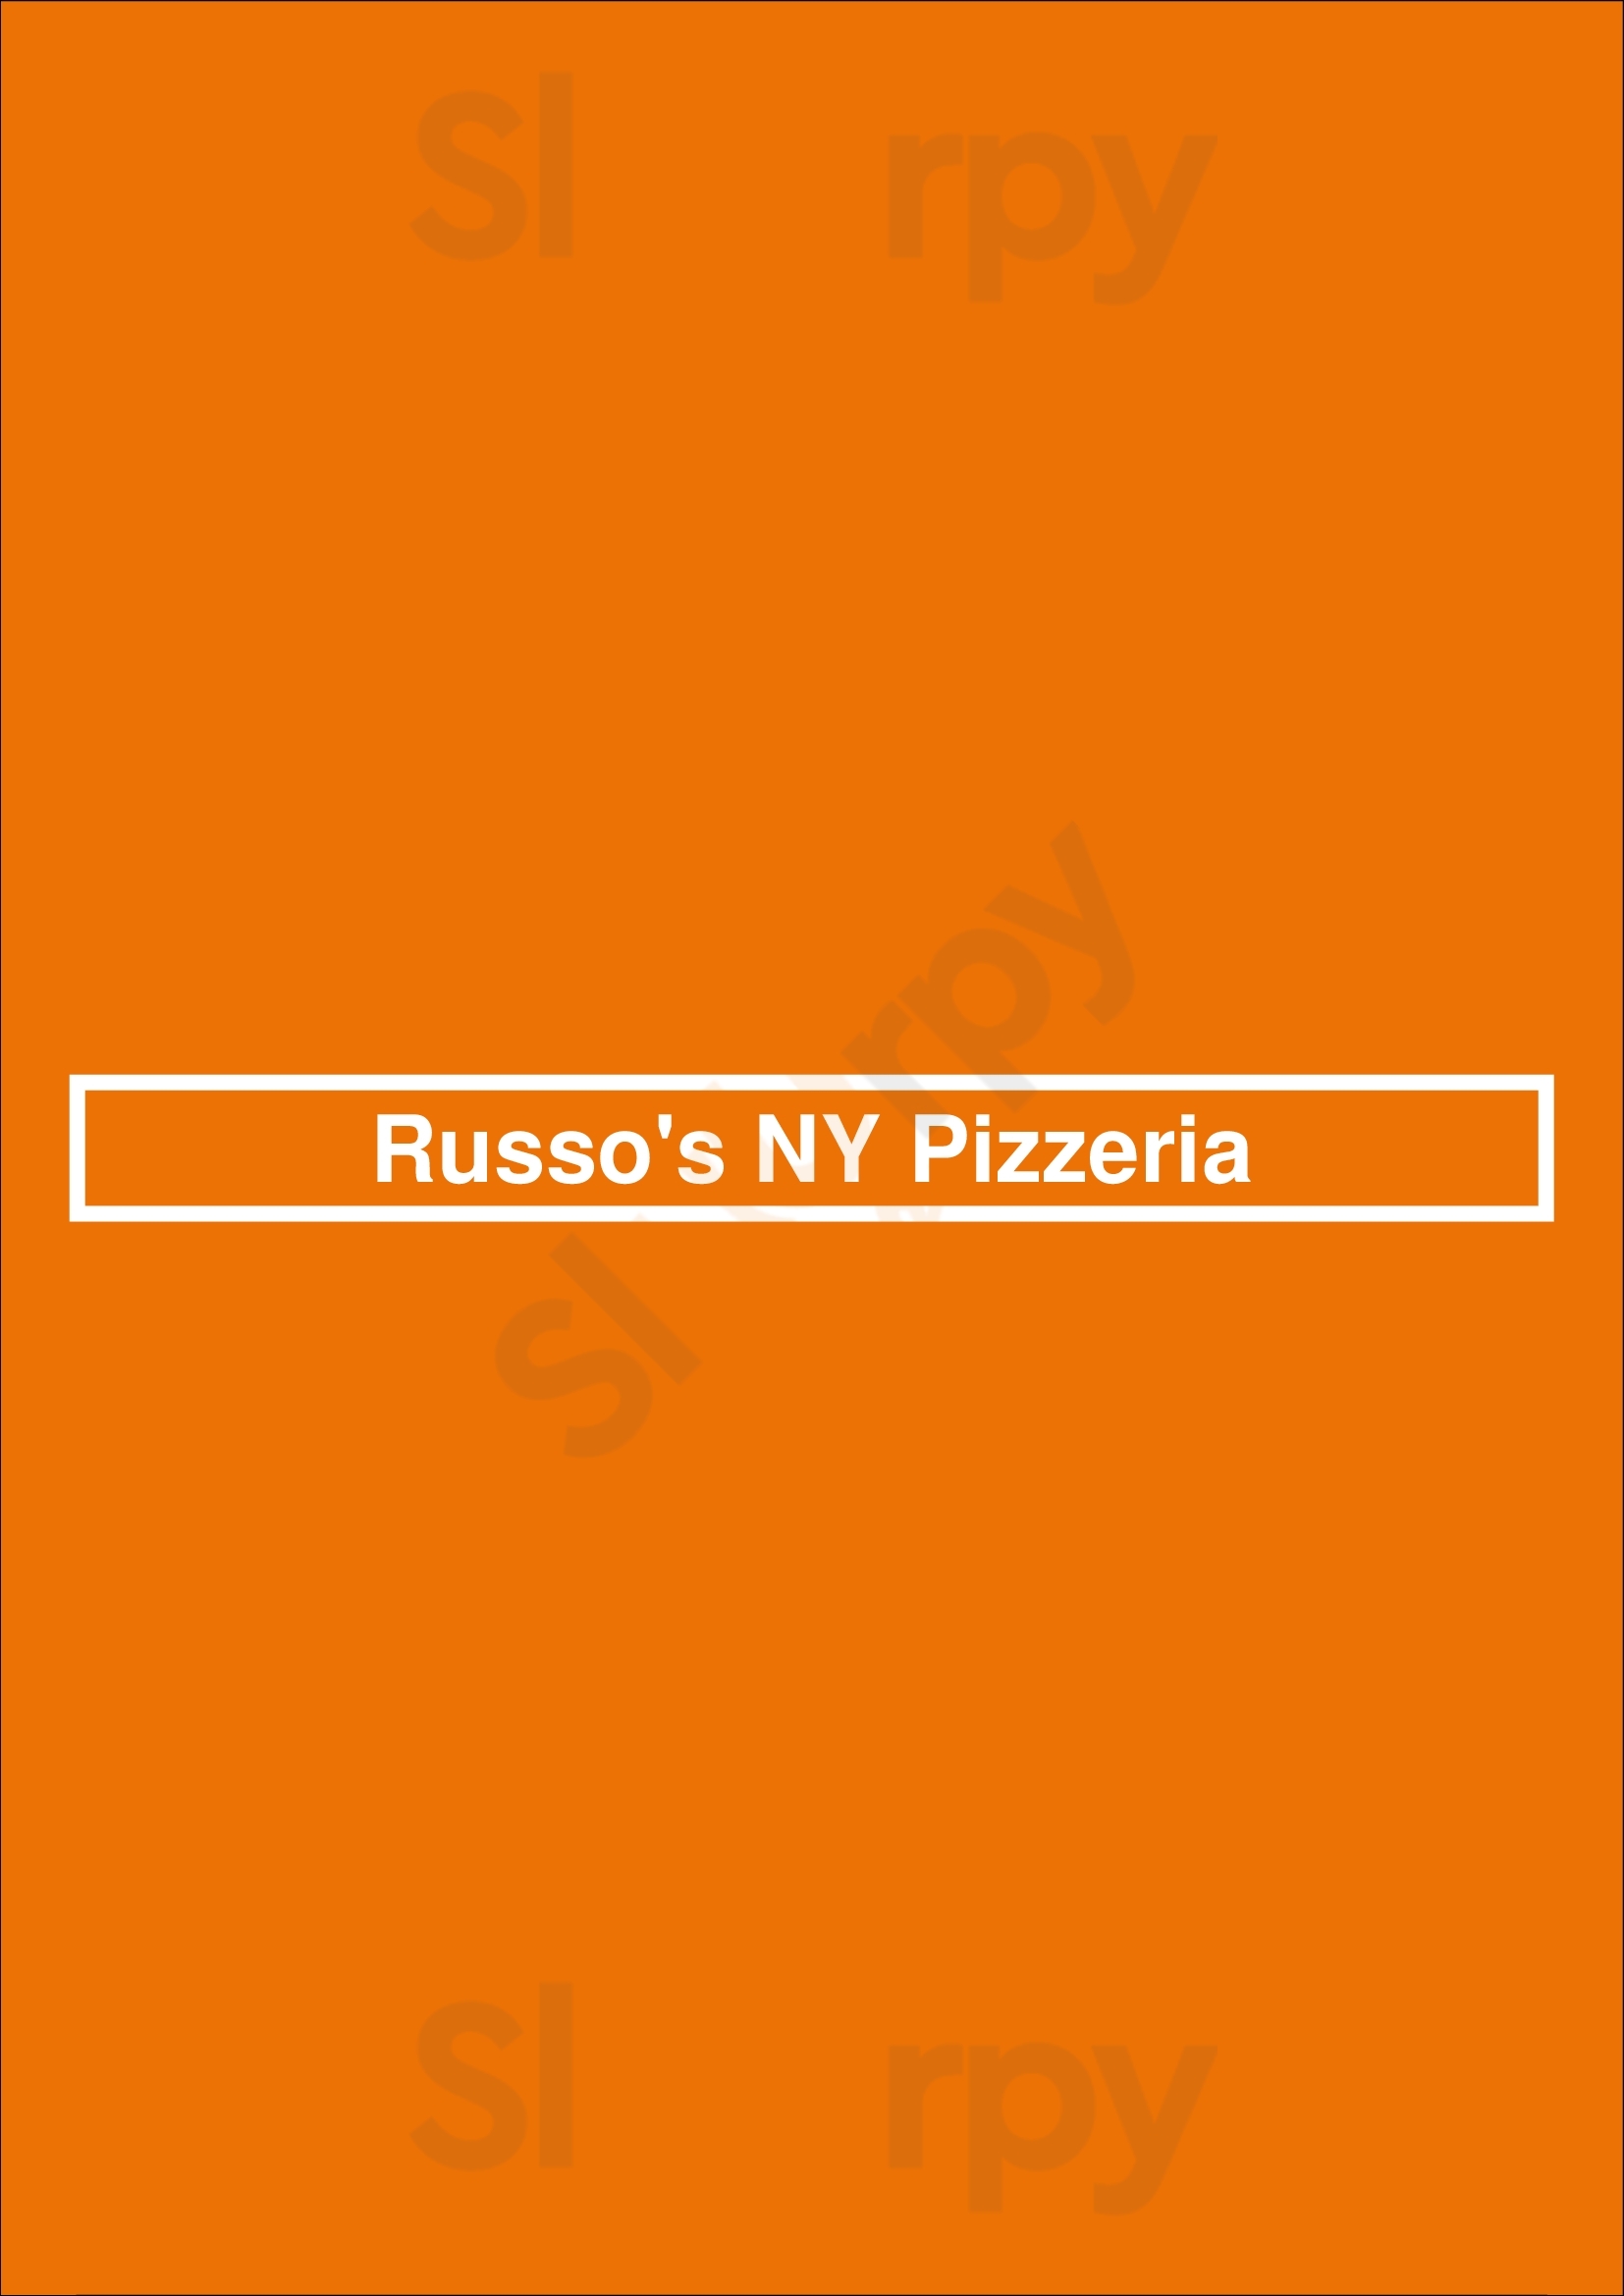 Russo's Ny Pizzeria Houston Menu - 1